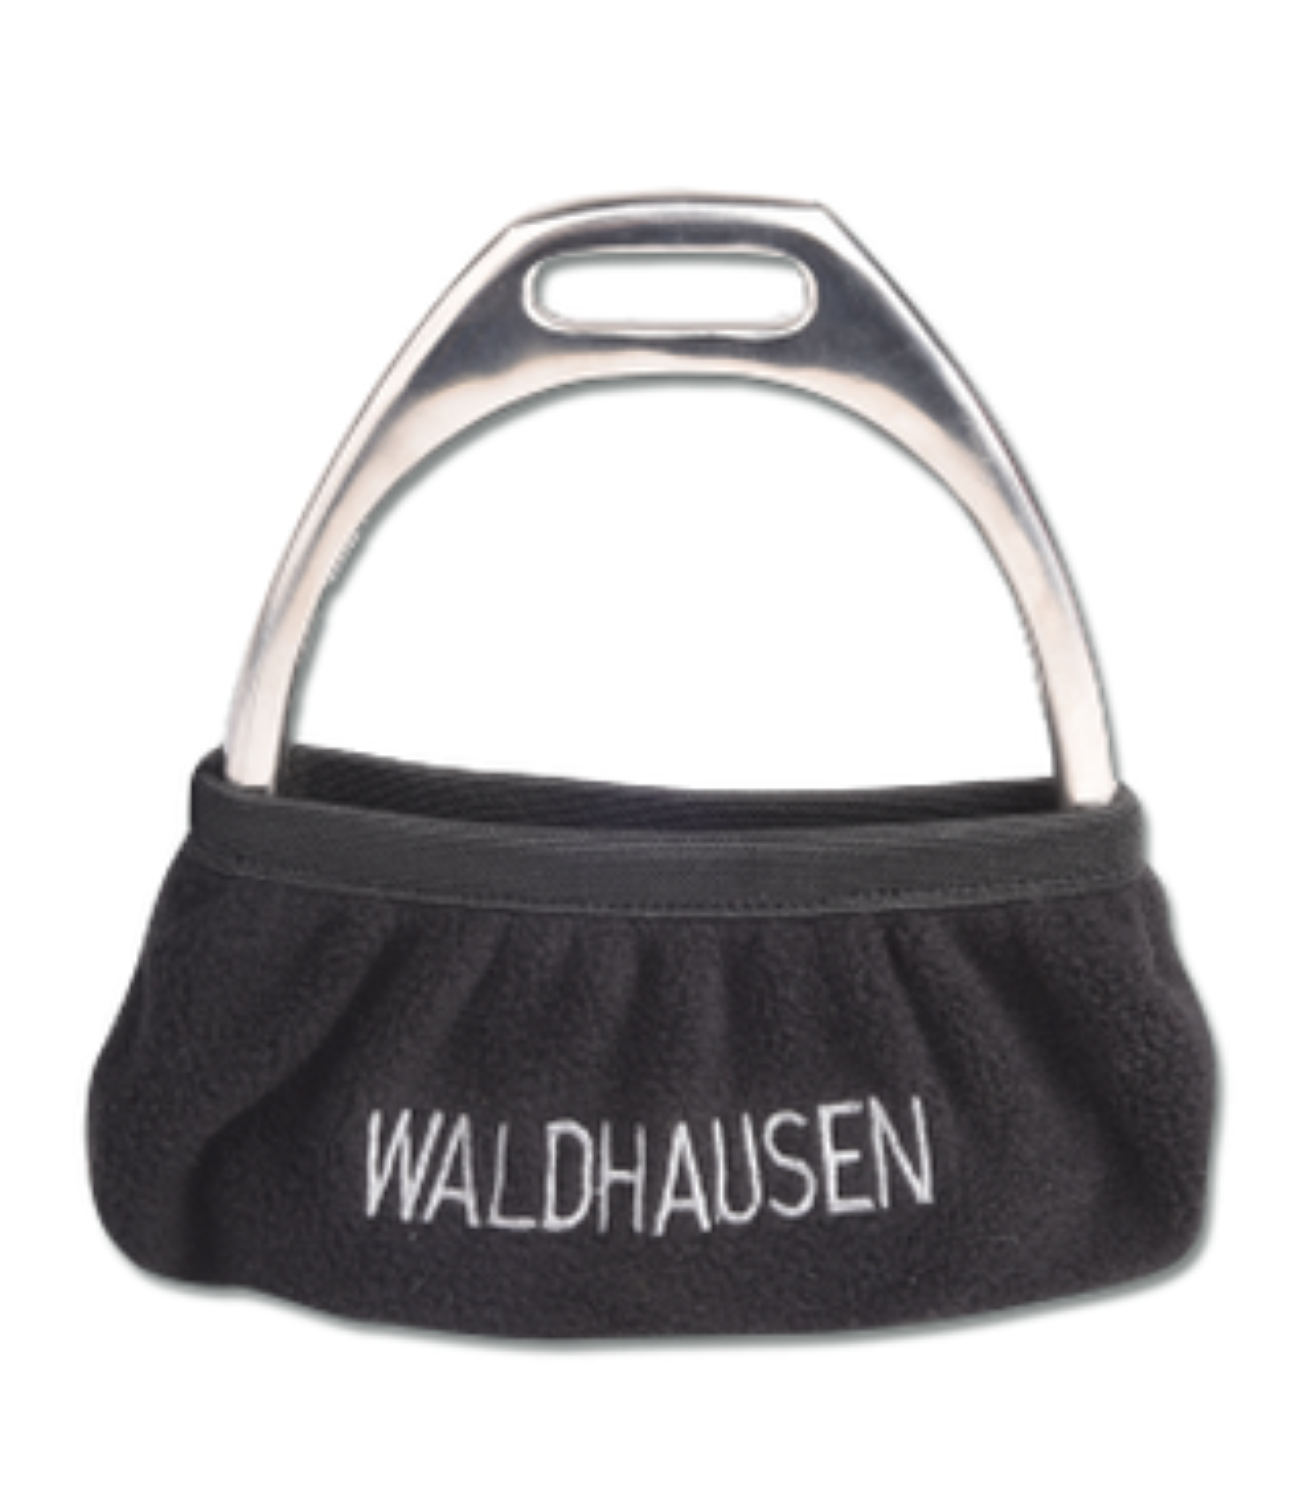 Waldhausen Fleece Stirrup Covers - Black